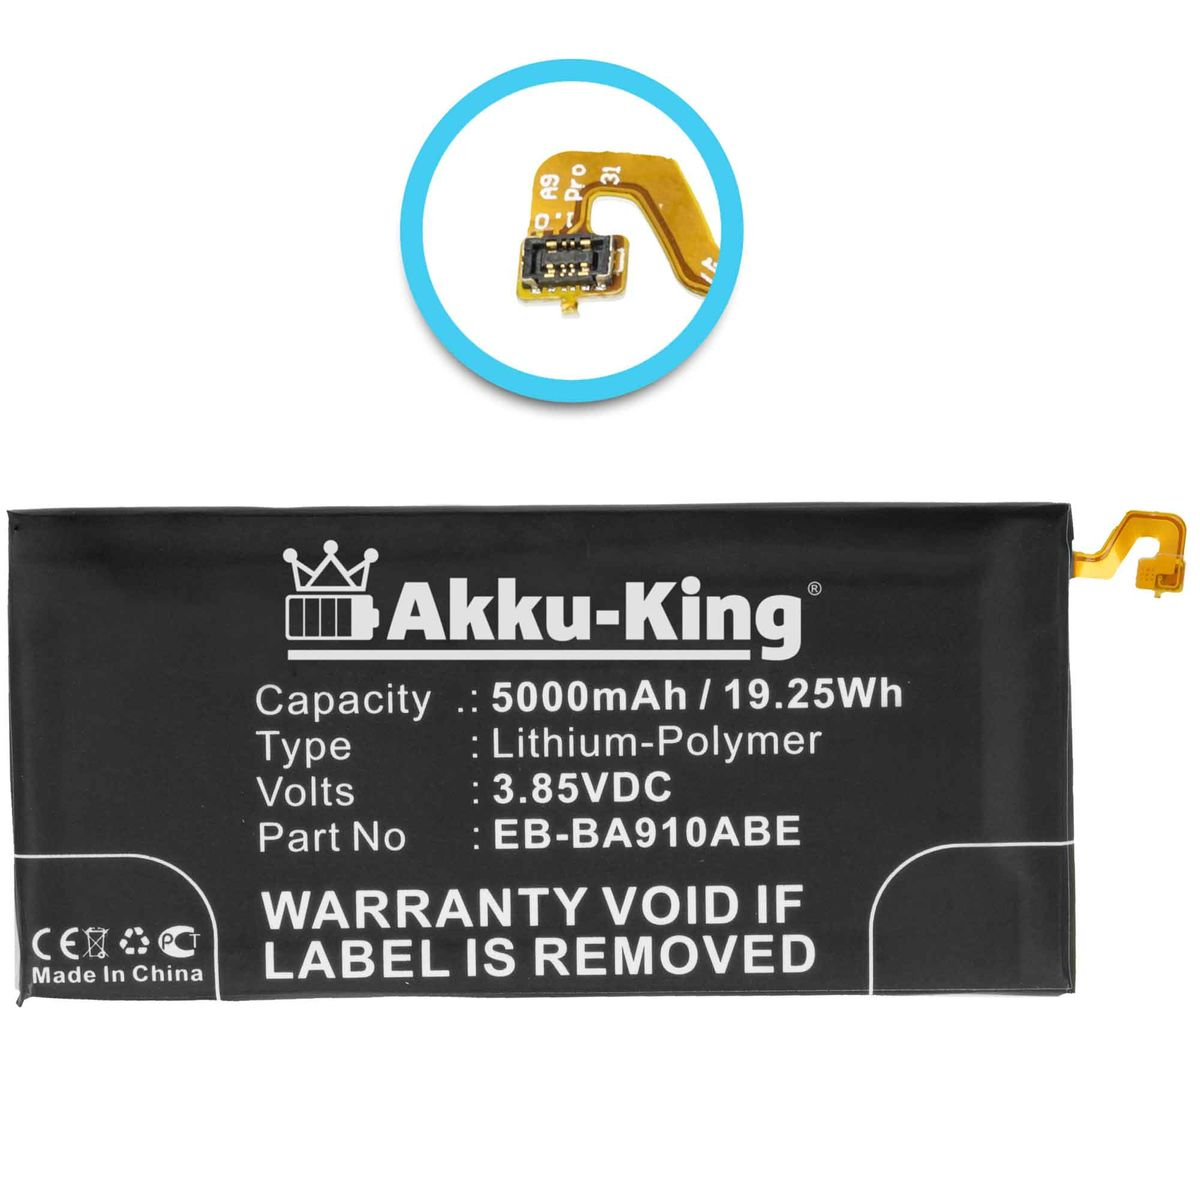 AKKU-KING Akku Li-Polymer 3.85 Handy-Akku, Samsung Volt, EB-BA910ABE kompatibel 5000mAh mit